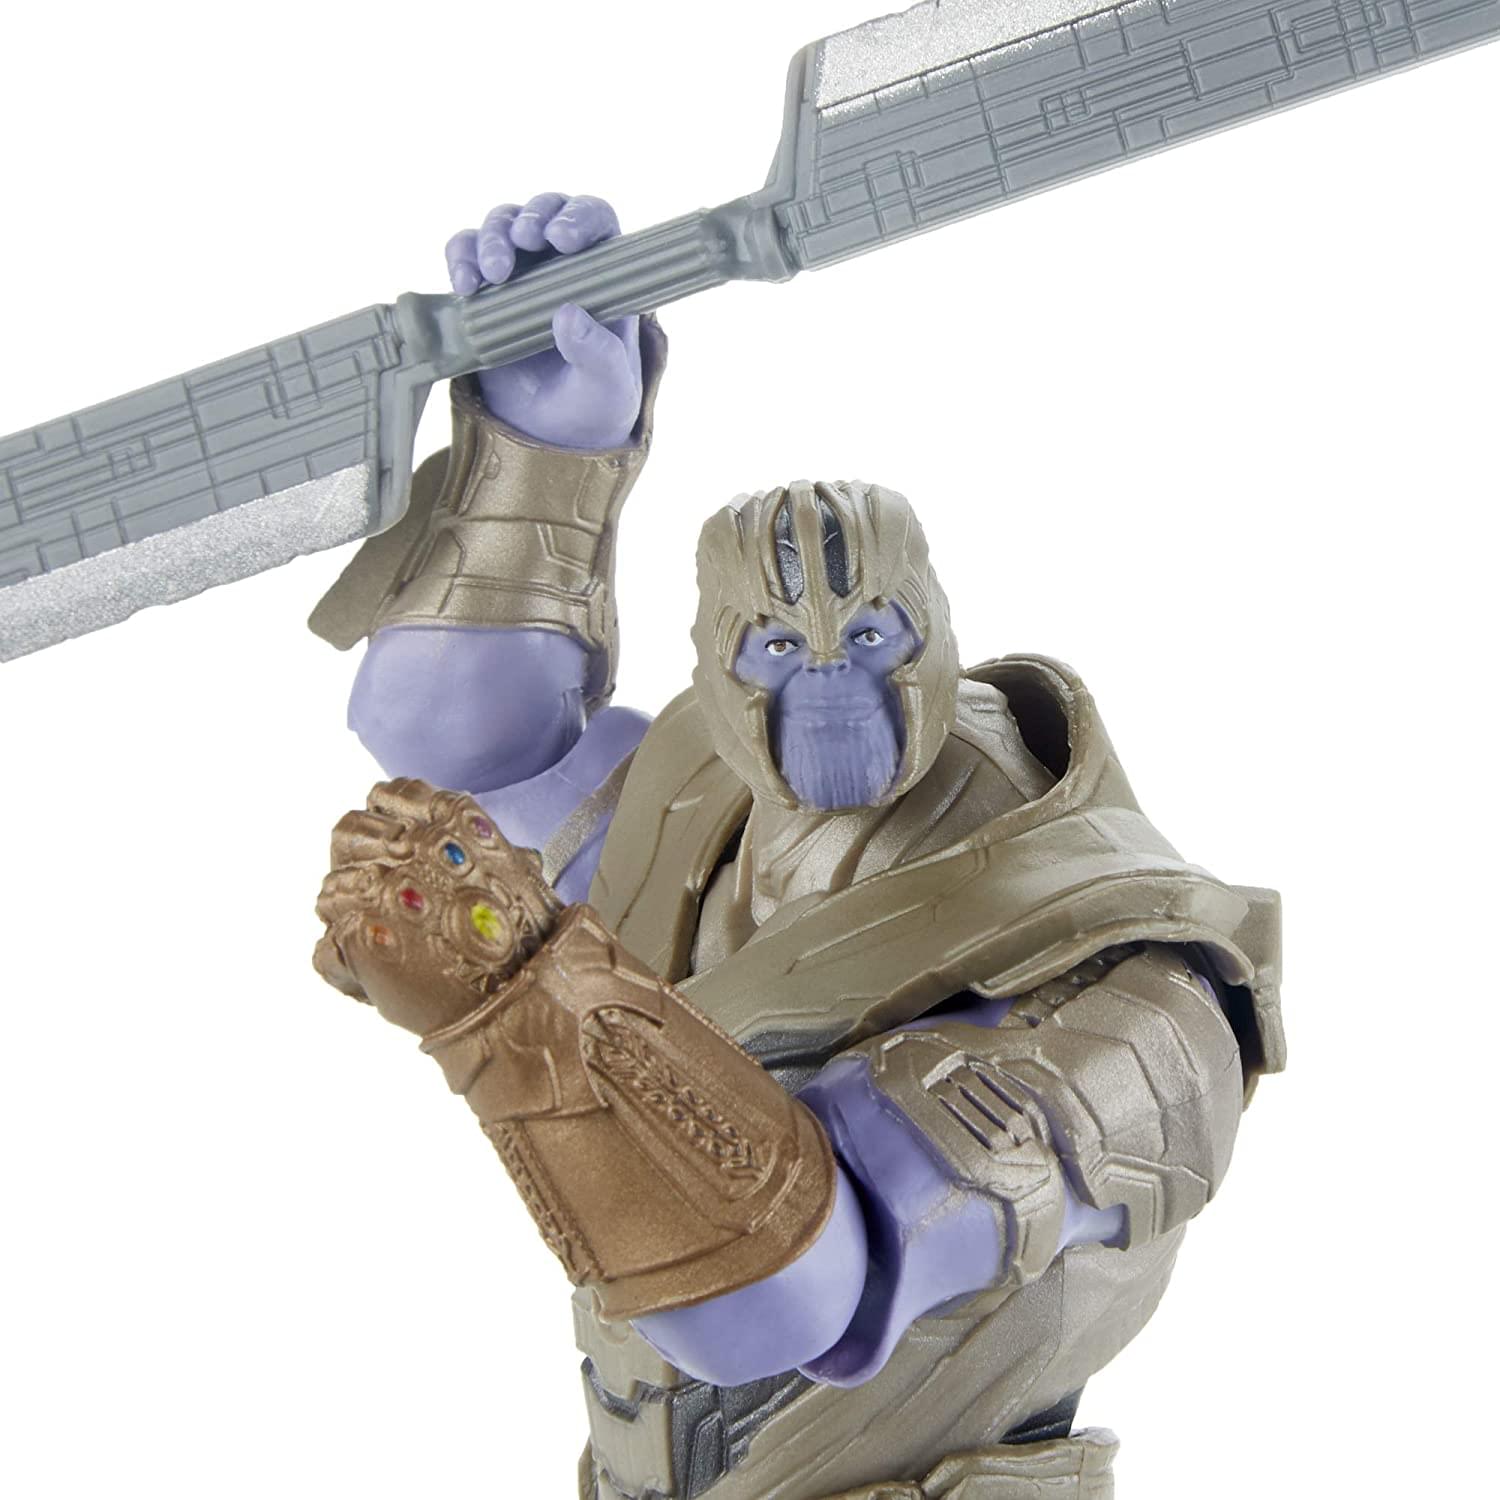 Marvel Avengers Endgame 6 Inch Action Figure | Thanos